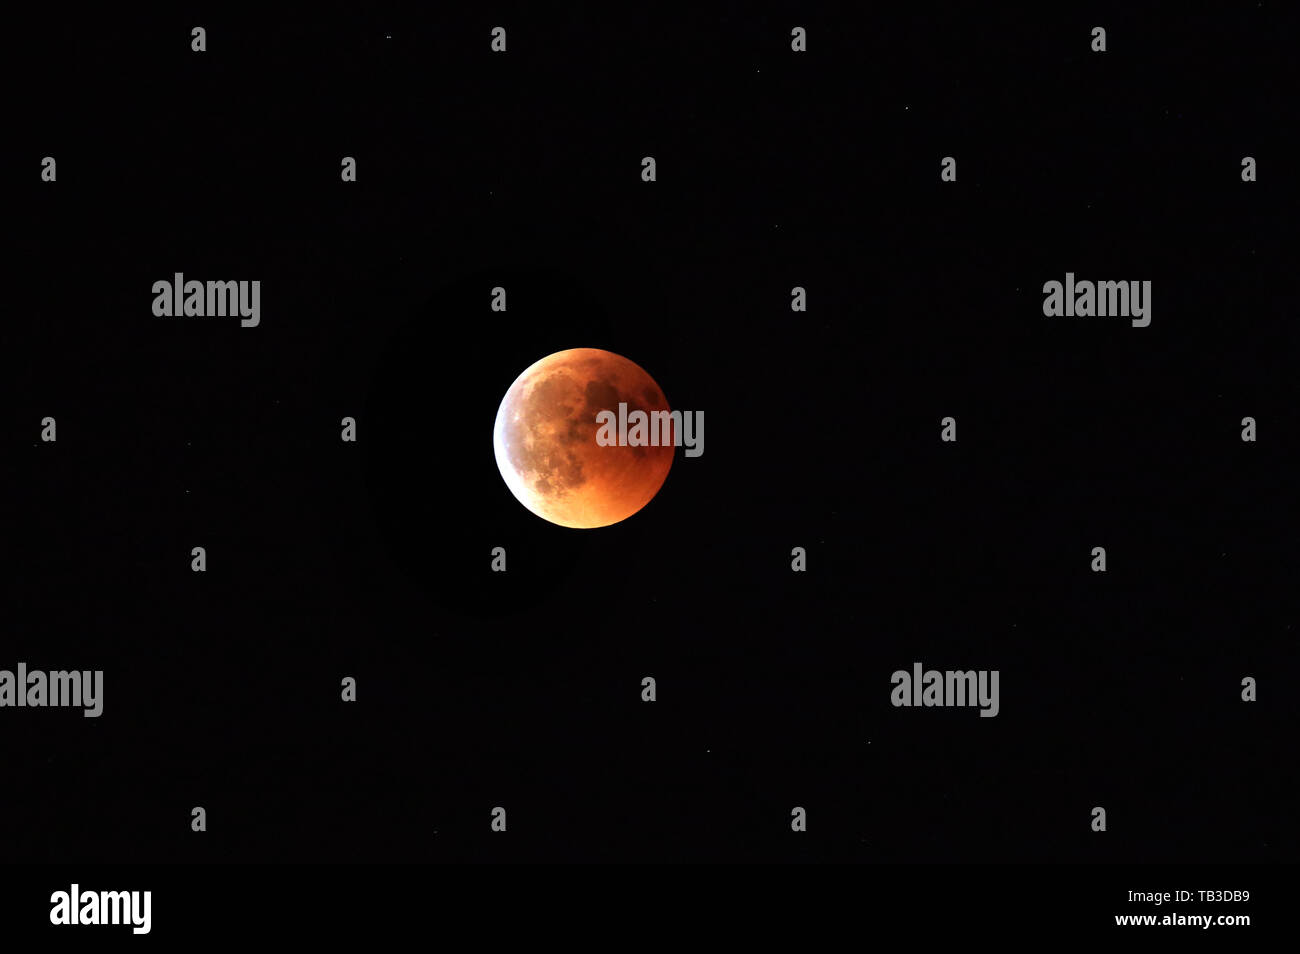 27.07.2018, Berlin, Berlin, Germania - eclissi lunare totale con rame-colorato di rosso la luna piena, la cosiddetta luna di sangue. 00S180727D955CAROEX.JPG [modello Foto Stock